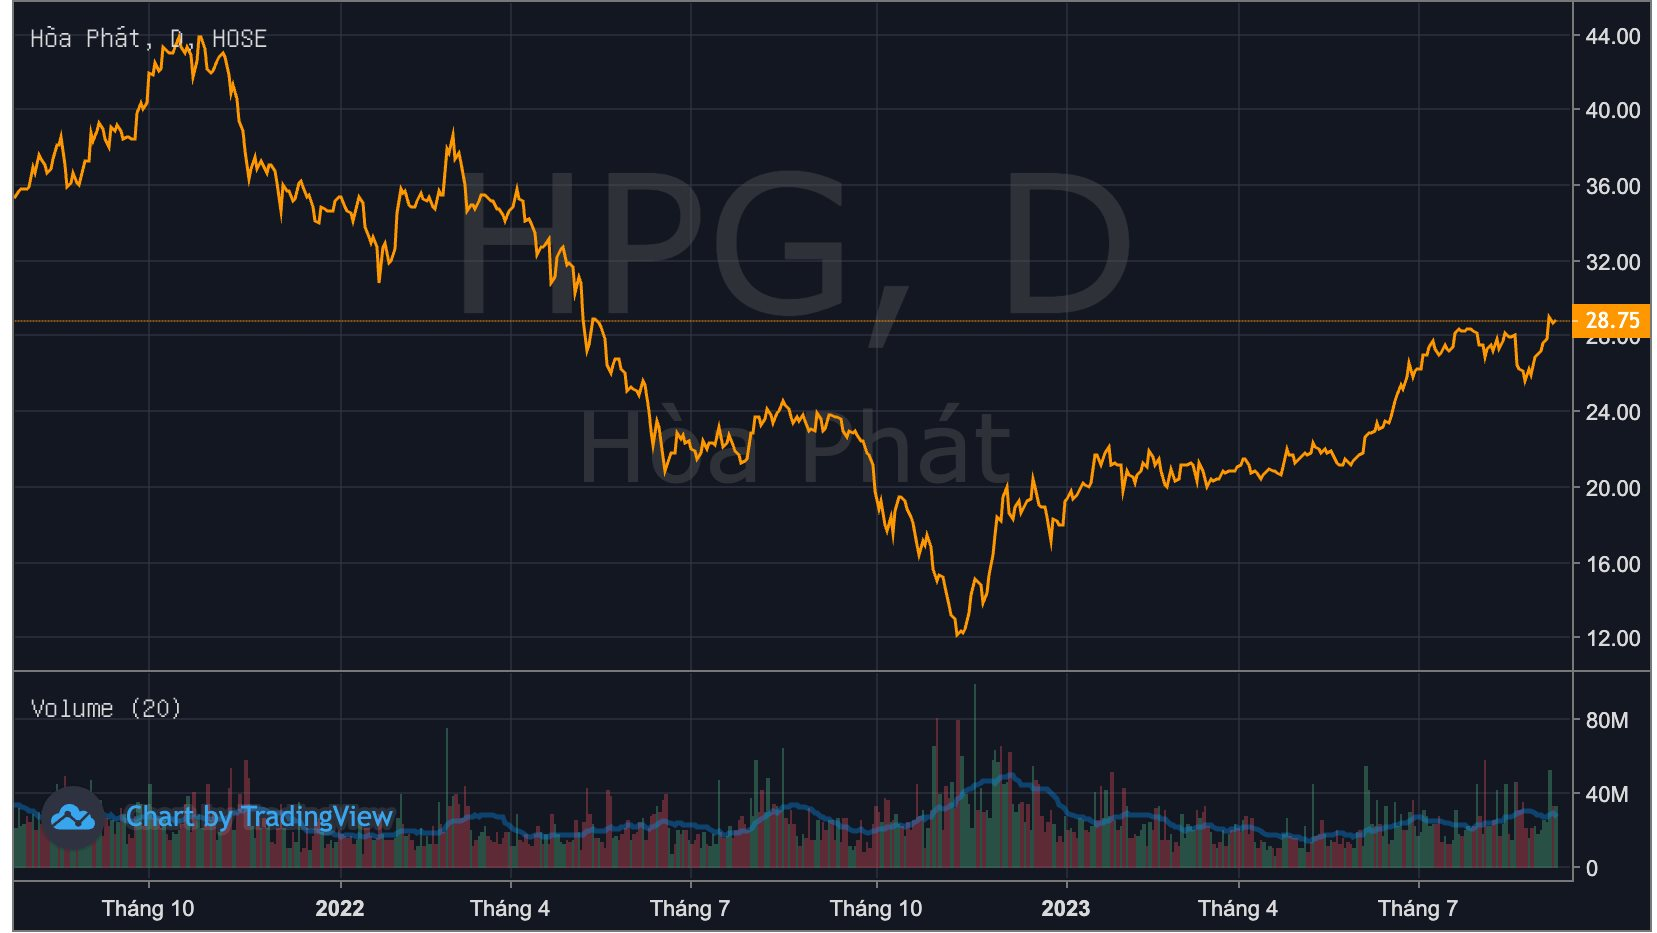 "Cổ phiếu quốc dân" HPG băng băng lên đỉnh 16 tháng bất chấp khối ngoại bán ròng, triển vọng dài hạn ra sao? - Ảnh 2.